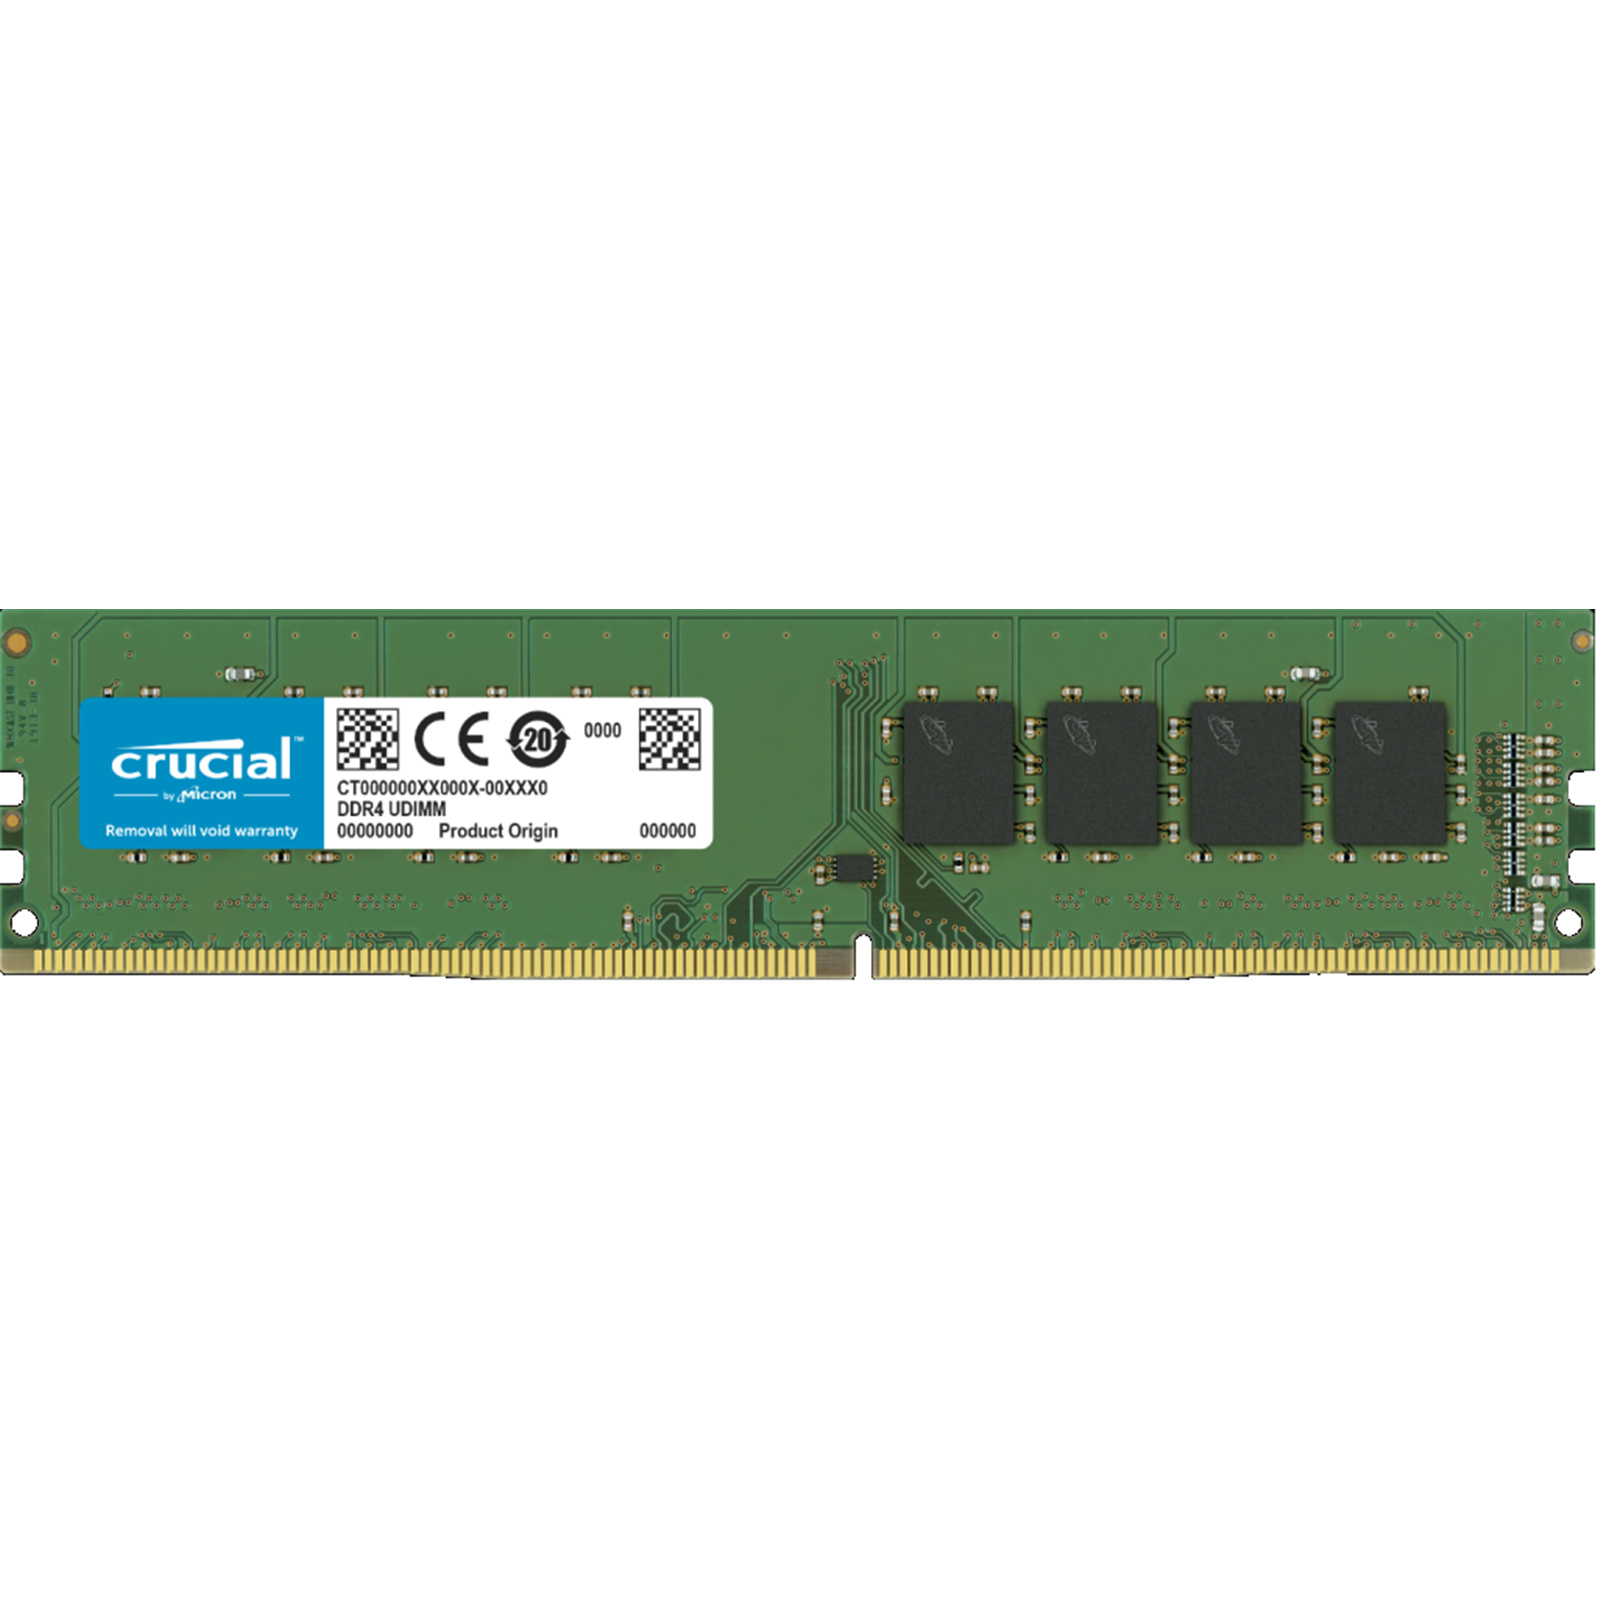 Buy the Crucial 8GB DDR4 Desktop RAM 2400 MT/s (PC4-19200) - CL17 - SR x8  -... ( CT8G4DFS824A ) online - PBTech.com